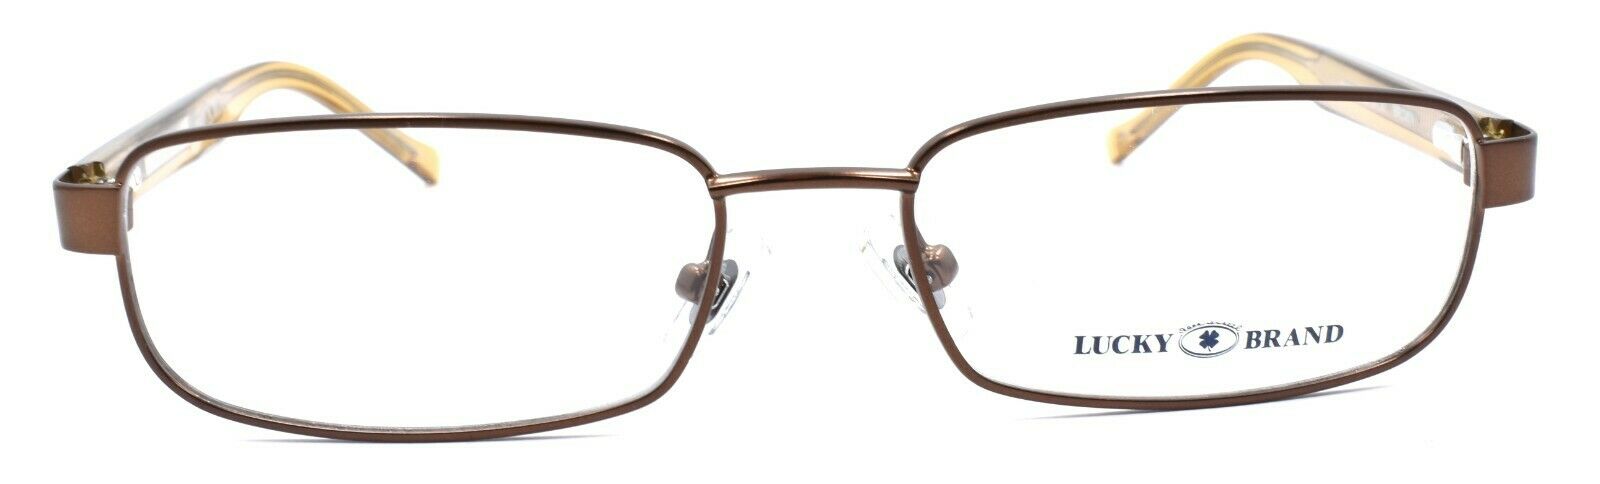 2-LUCKY BRAND Zipper Eyeglasses Frames SMALL 50-15-130 Brown + CASE-751286226980-IKSpecs